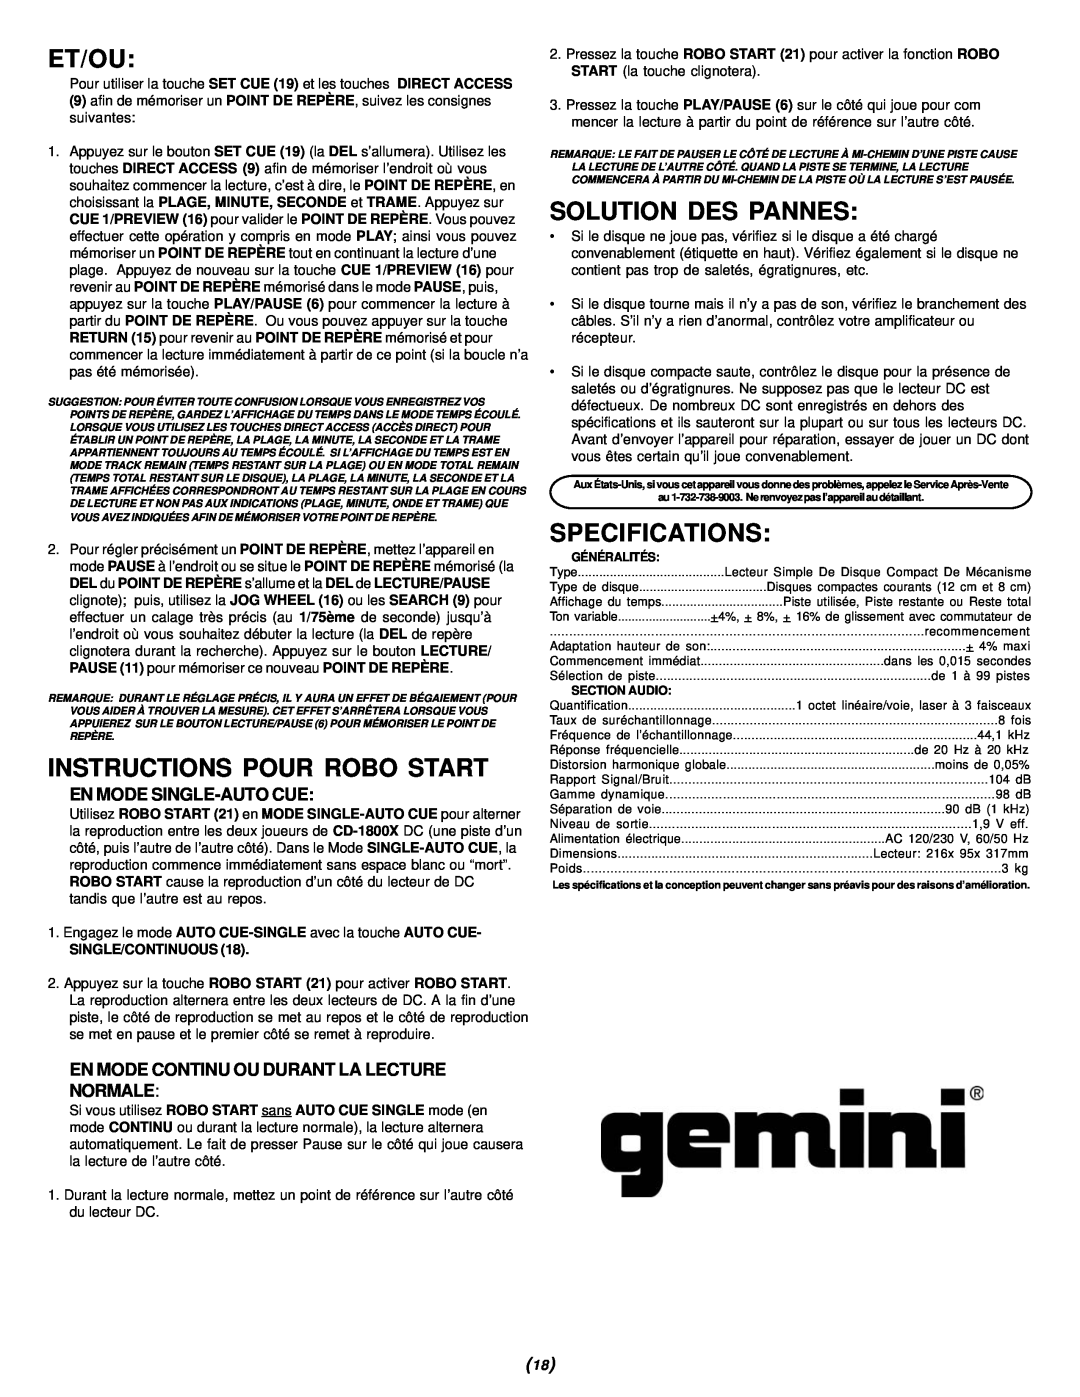 Gemini CD-1800X manual Et/Ou, Instructions Pour Robo Start, Solution Des Pannes, En Mode Single-Autocue, Specifications 